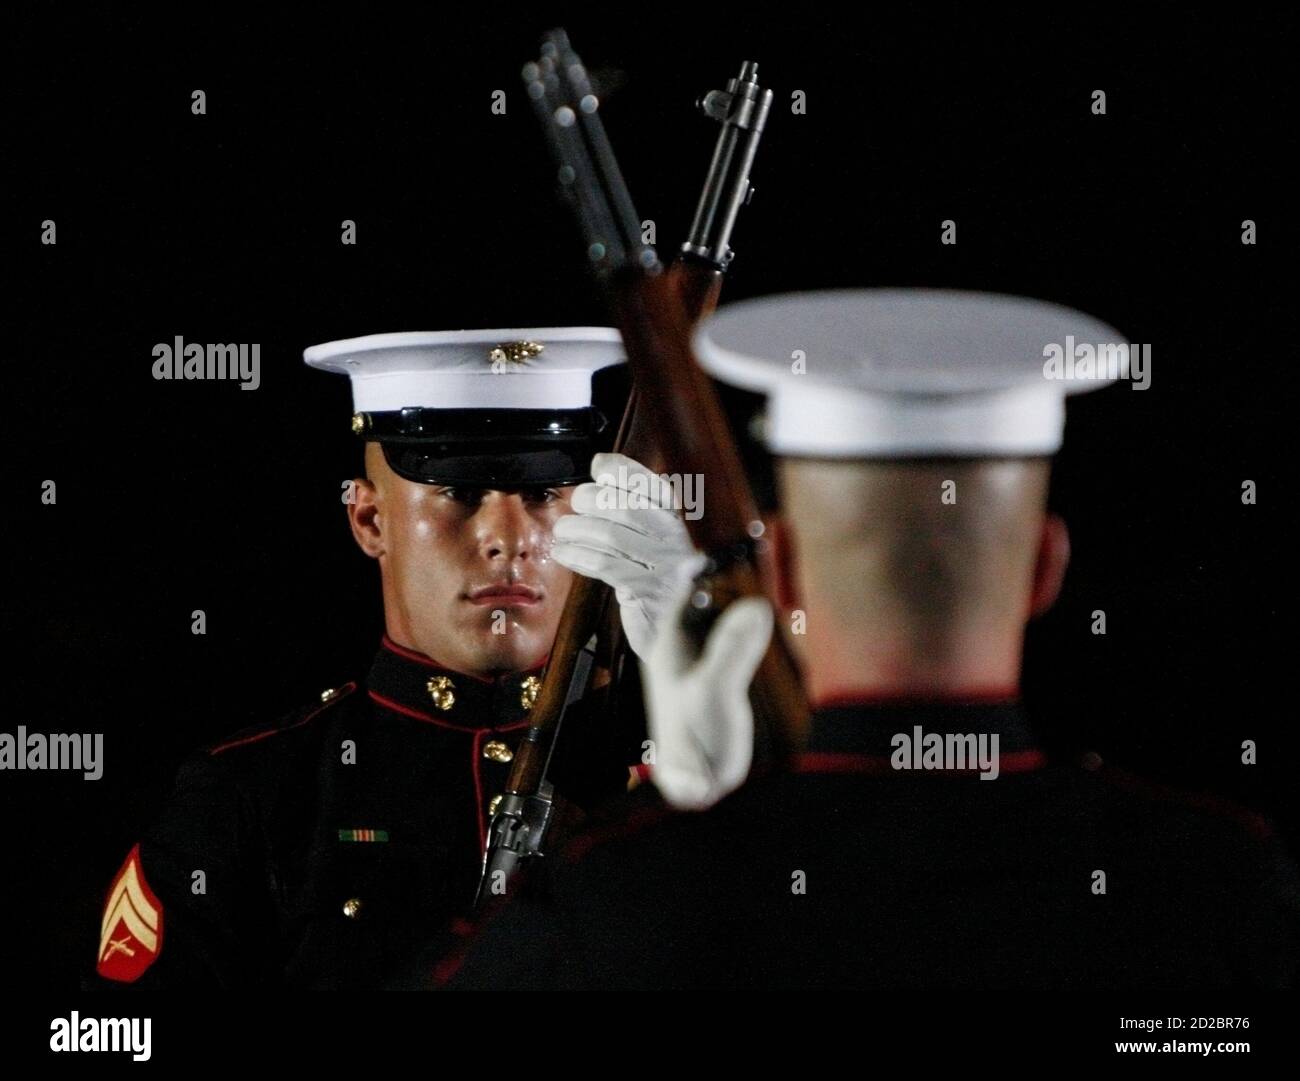 Mitglieder des U.S. Marines Corps Silent Drill Exhibition Platoon nehmen an der Abendparade in den Marine Barracks in Washington, 24. Juli 2009 Teil. REUTERS/Jim Young (US-POLITIK MILITÄR) Stockfoto